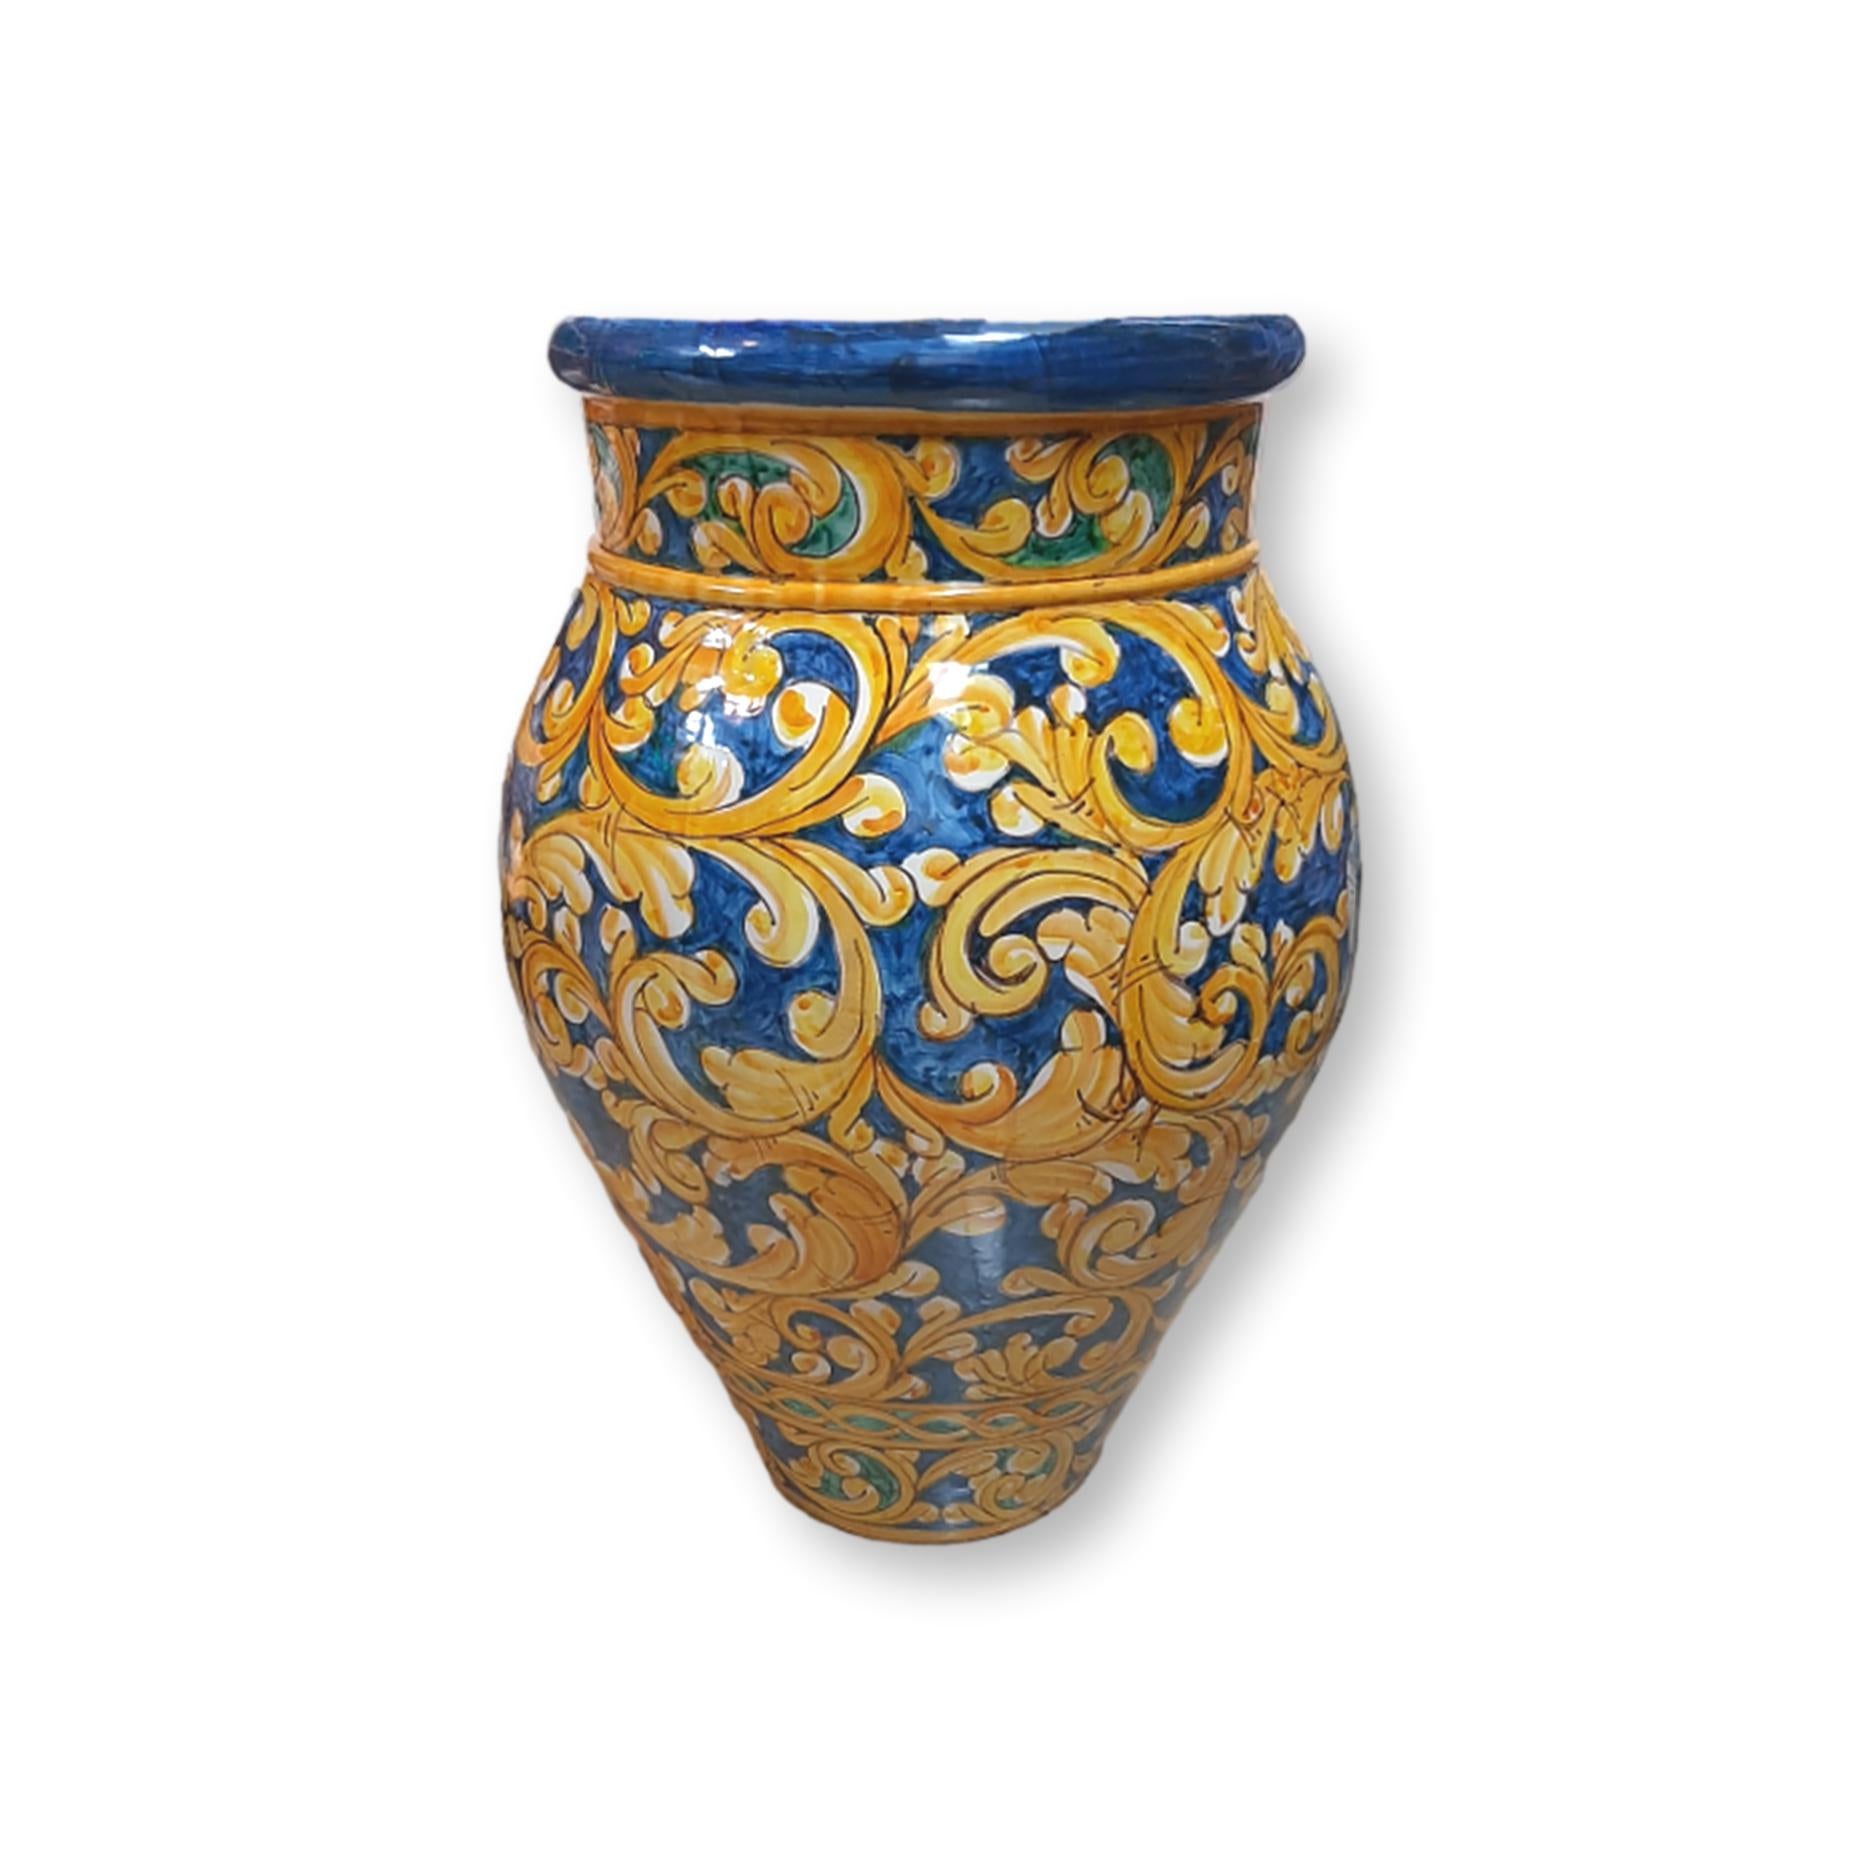 Giara in ceramica dipinta a mano - Decoro Giallo e blu con ornamento centrale